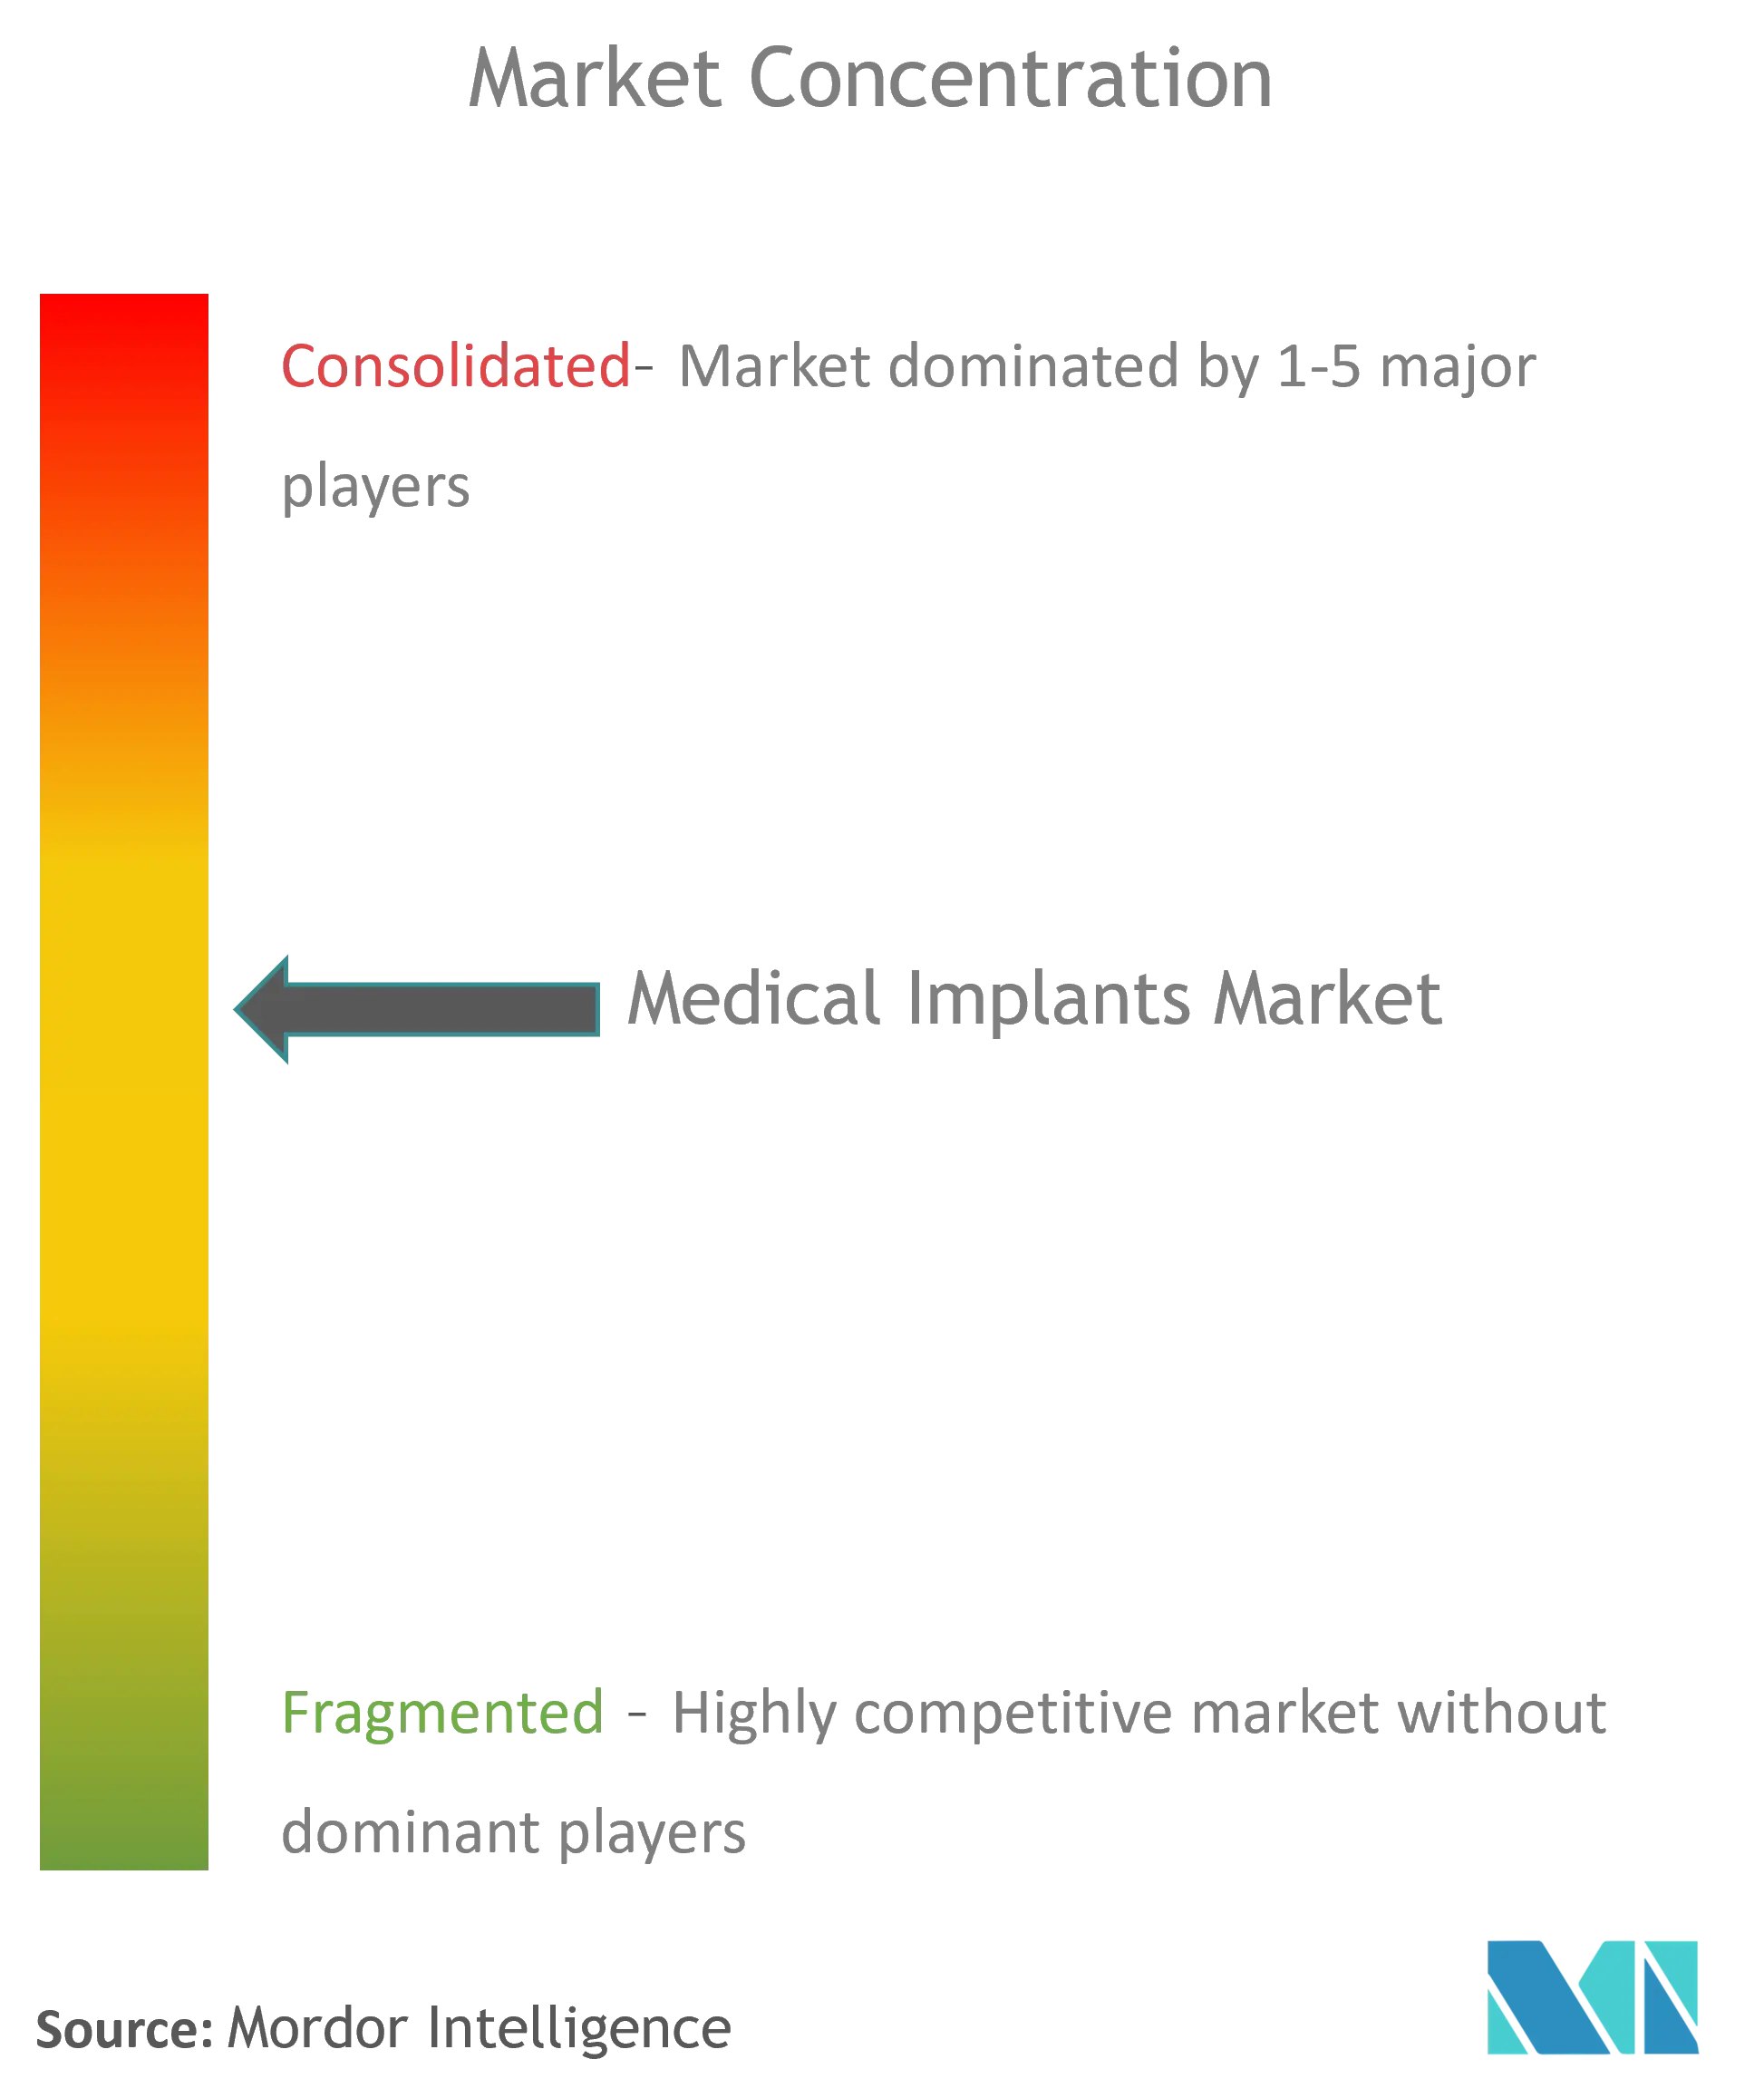 Medical Implants Market Concentration